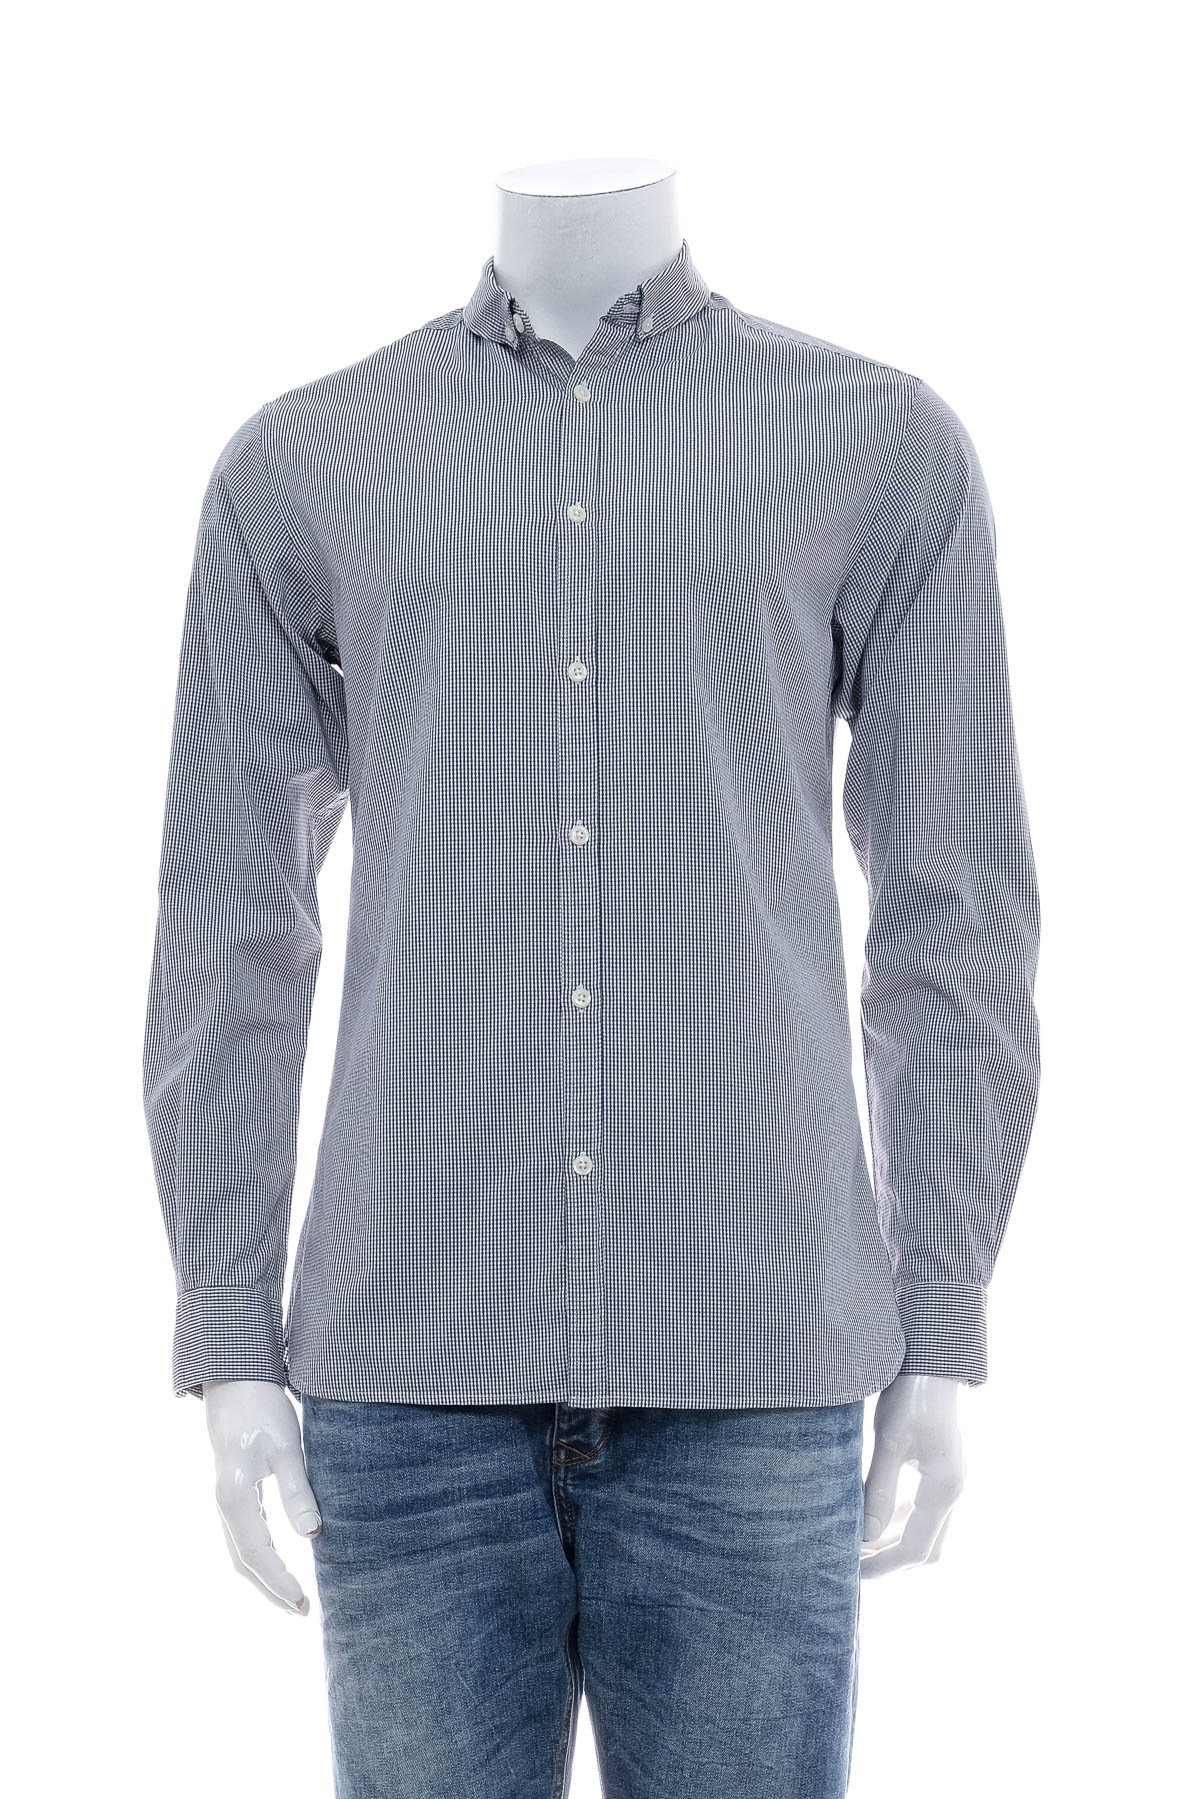 Ανδρικό πουκάμισο - PREMIUM BY JACK & JONES - 0